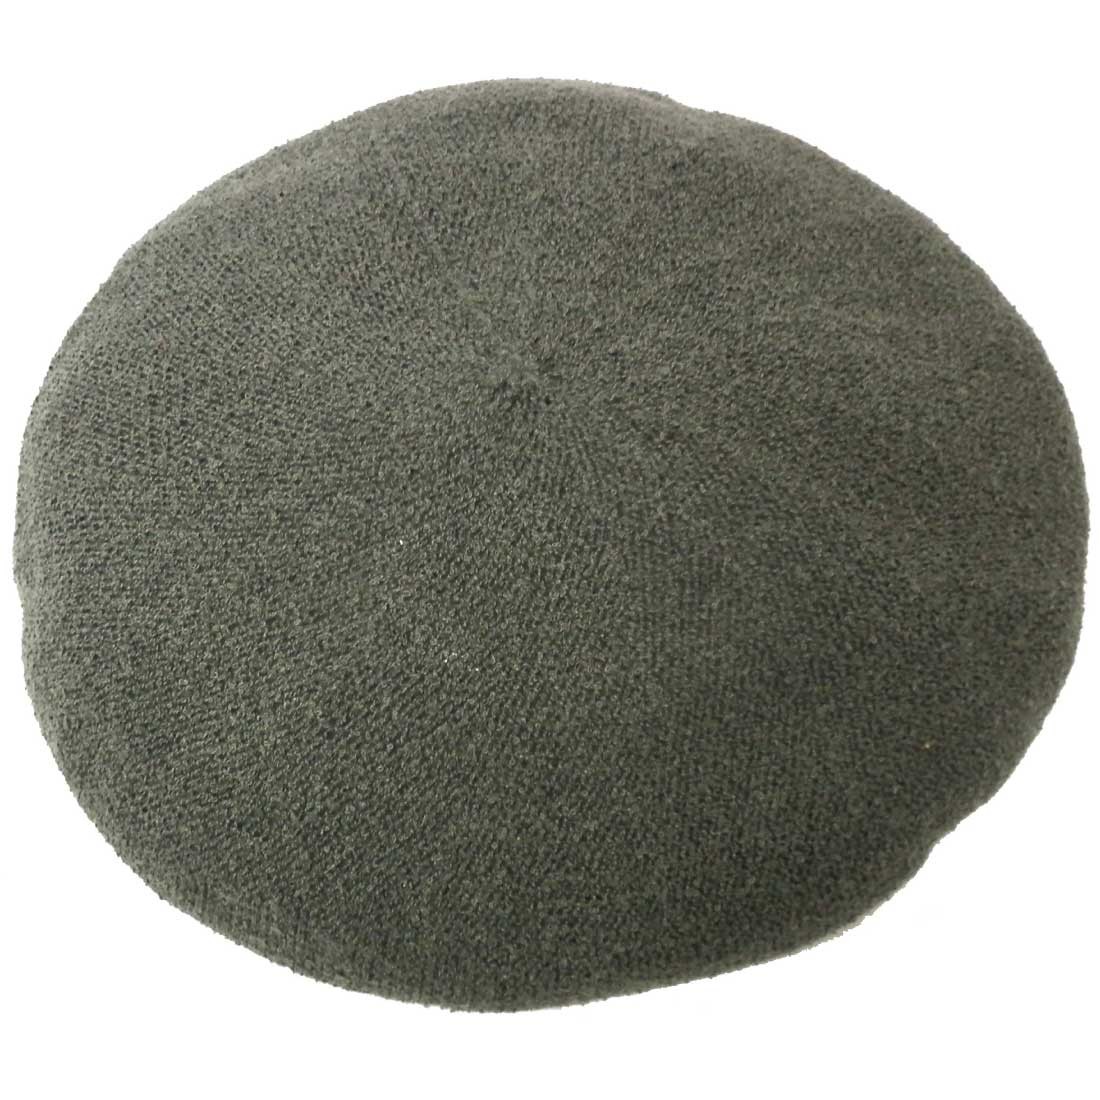 サーモ ベレー帽 涼しい ふんわり 綺麗シルエットのベレー サイズ調節 57.5cm knit-16...